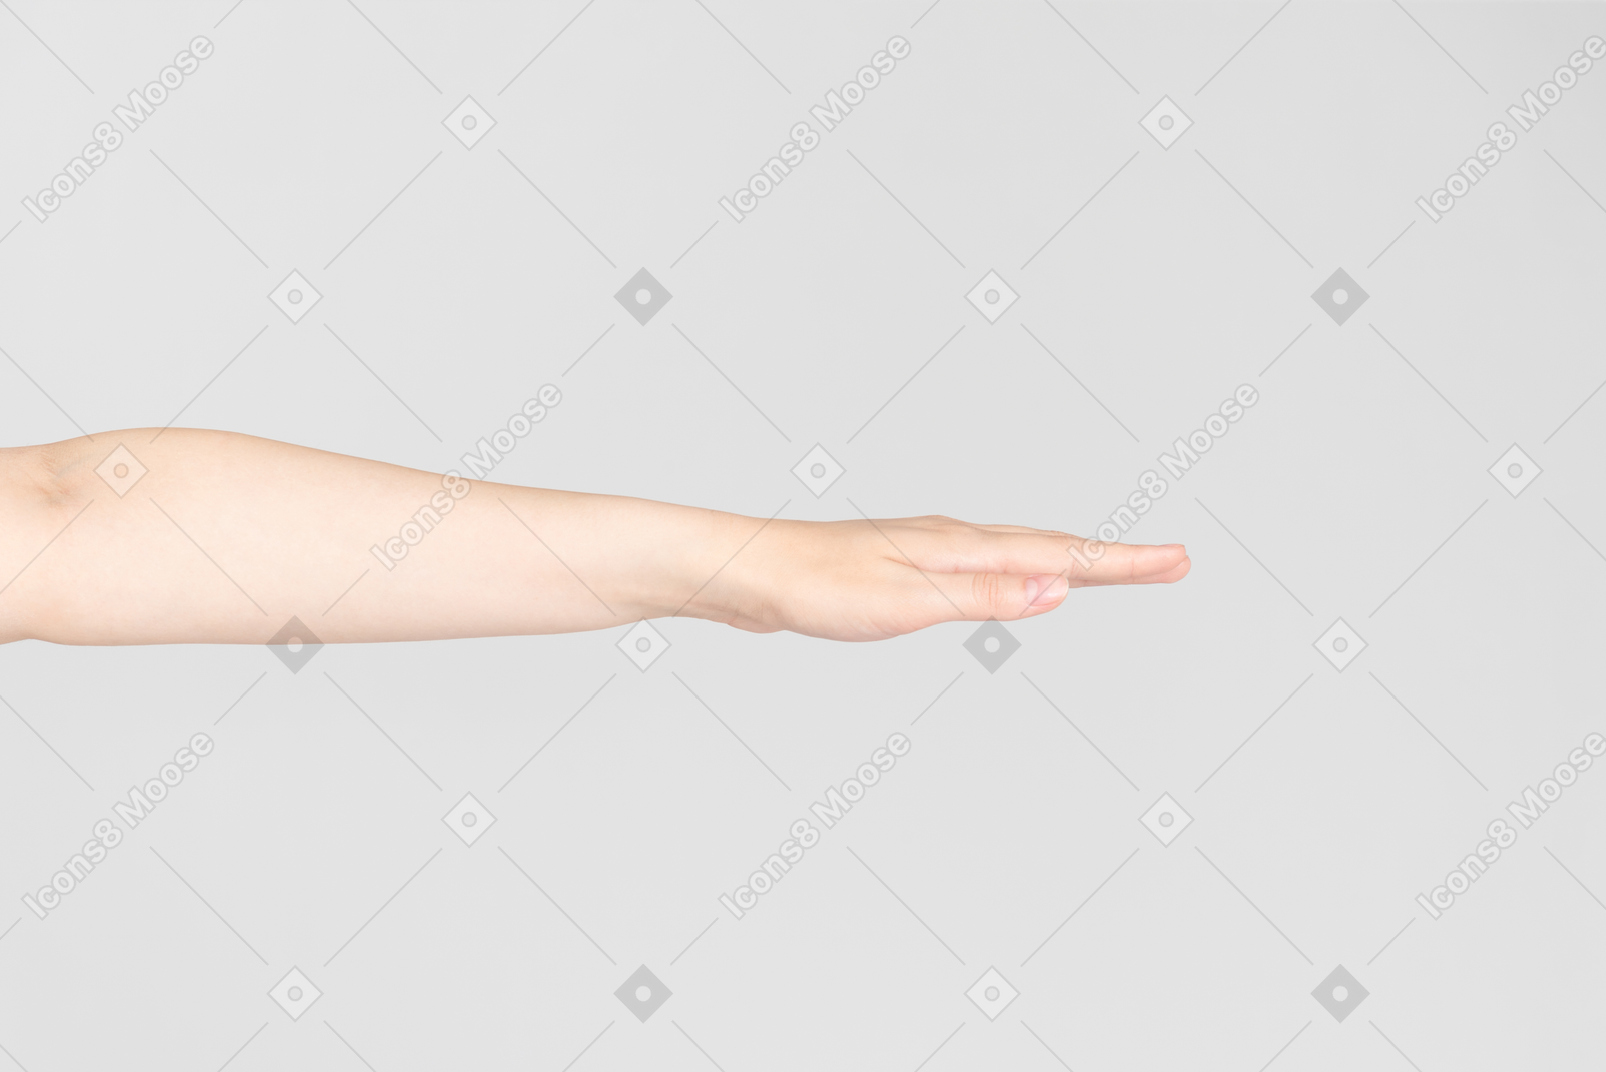 Olhar lateral de mão feminina estendida